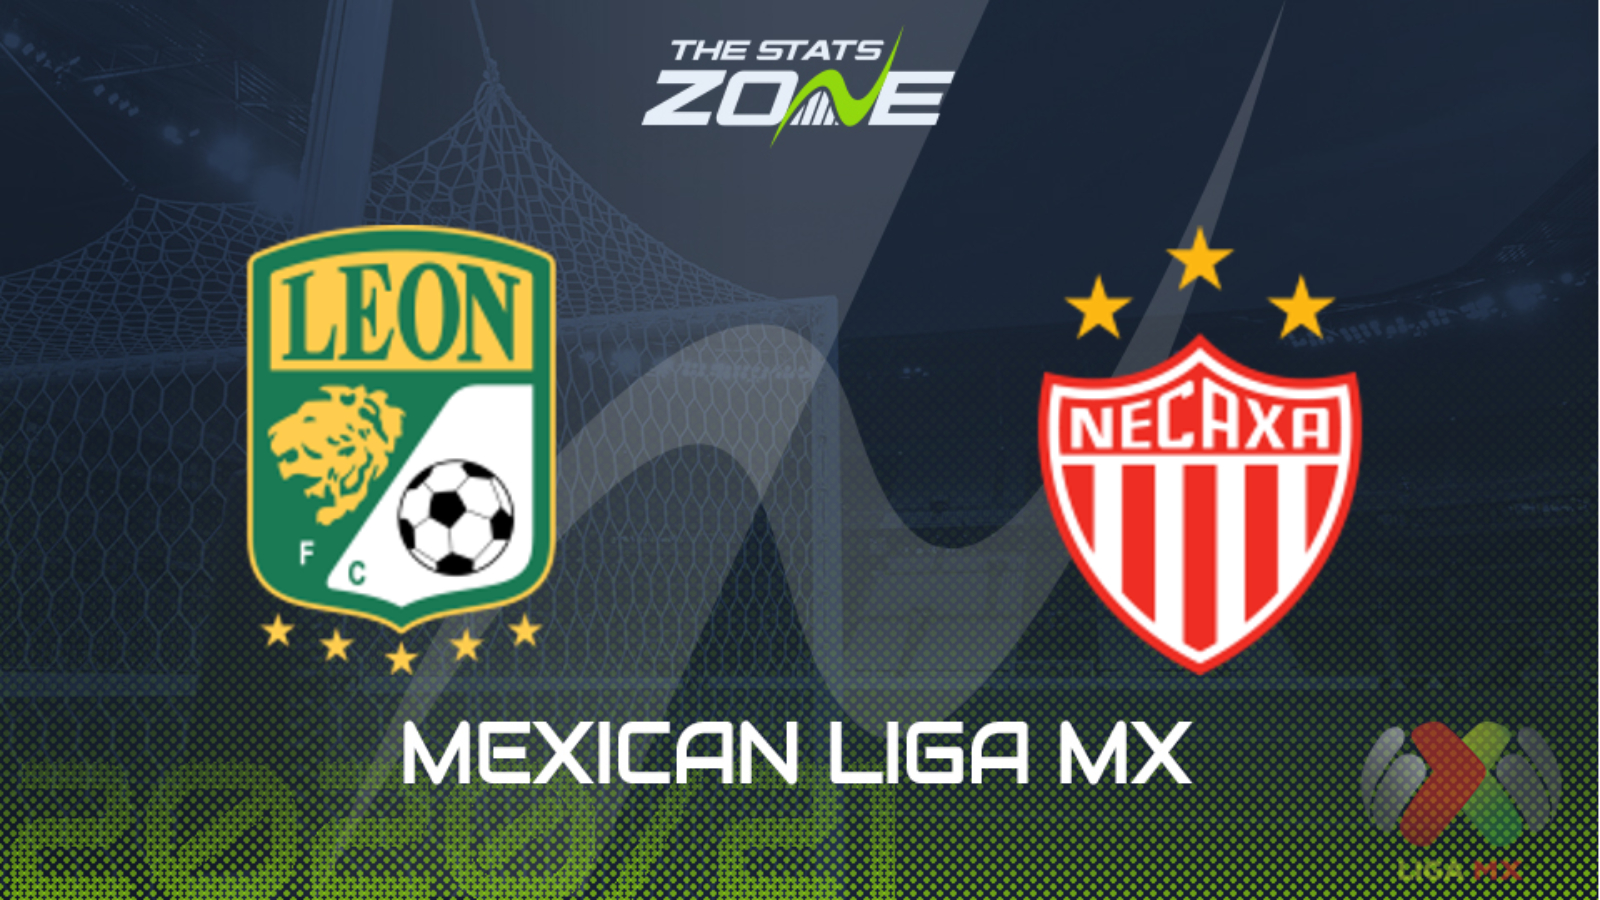 2020 21 Mexican Liga Mx Leon Vs Necaxa Preview Prediction The Stats Zone [ 900 x 1600 Pixel ]